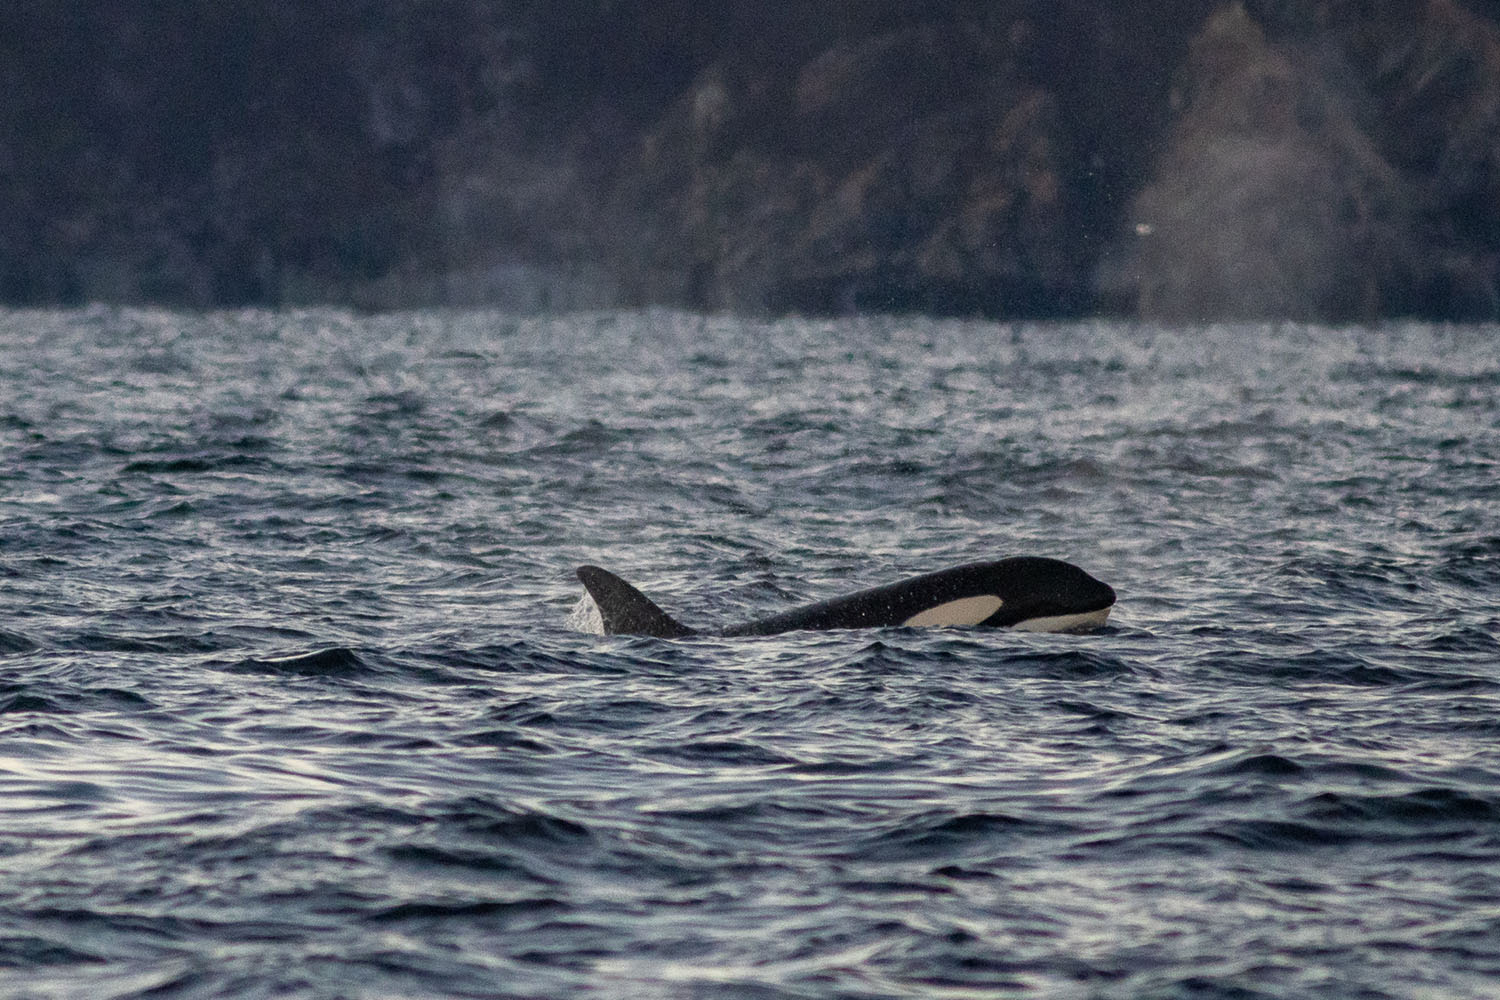 voyage scientifique - orques et baleines a bosse de norvege 51